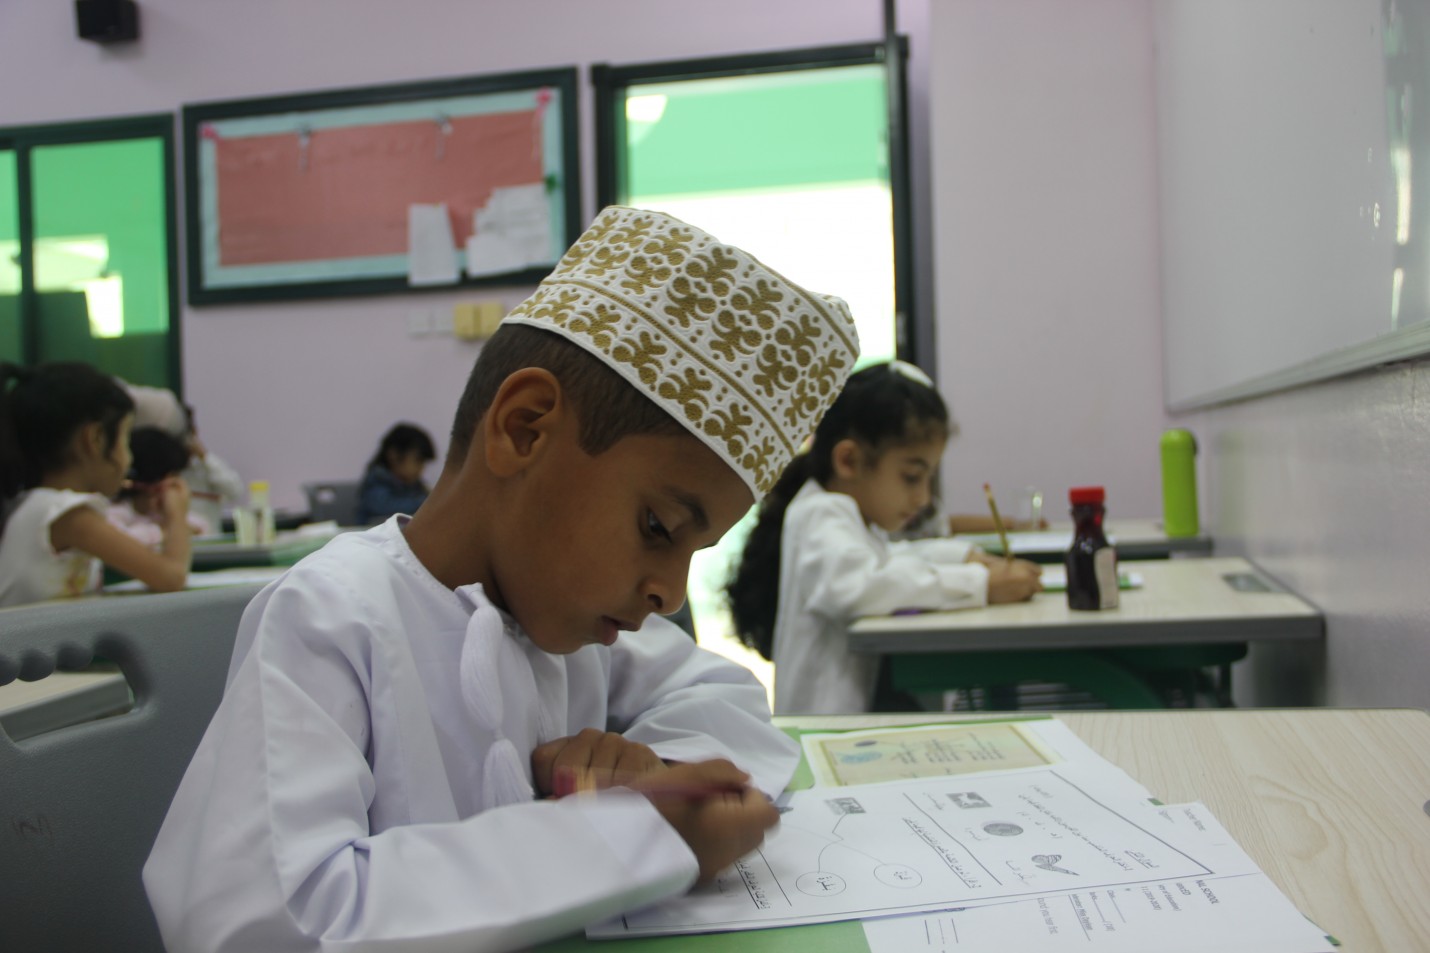 Al-Ibdaa International School